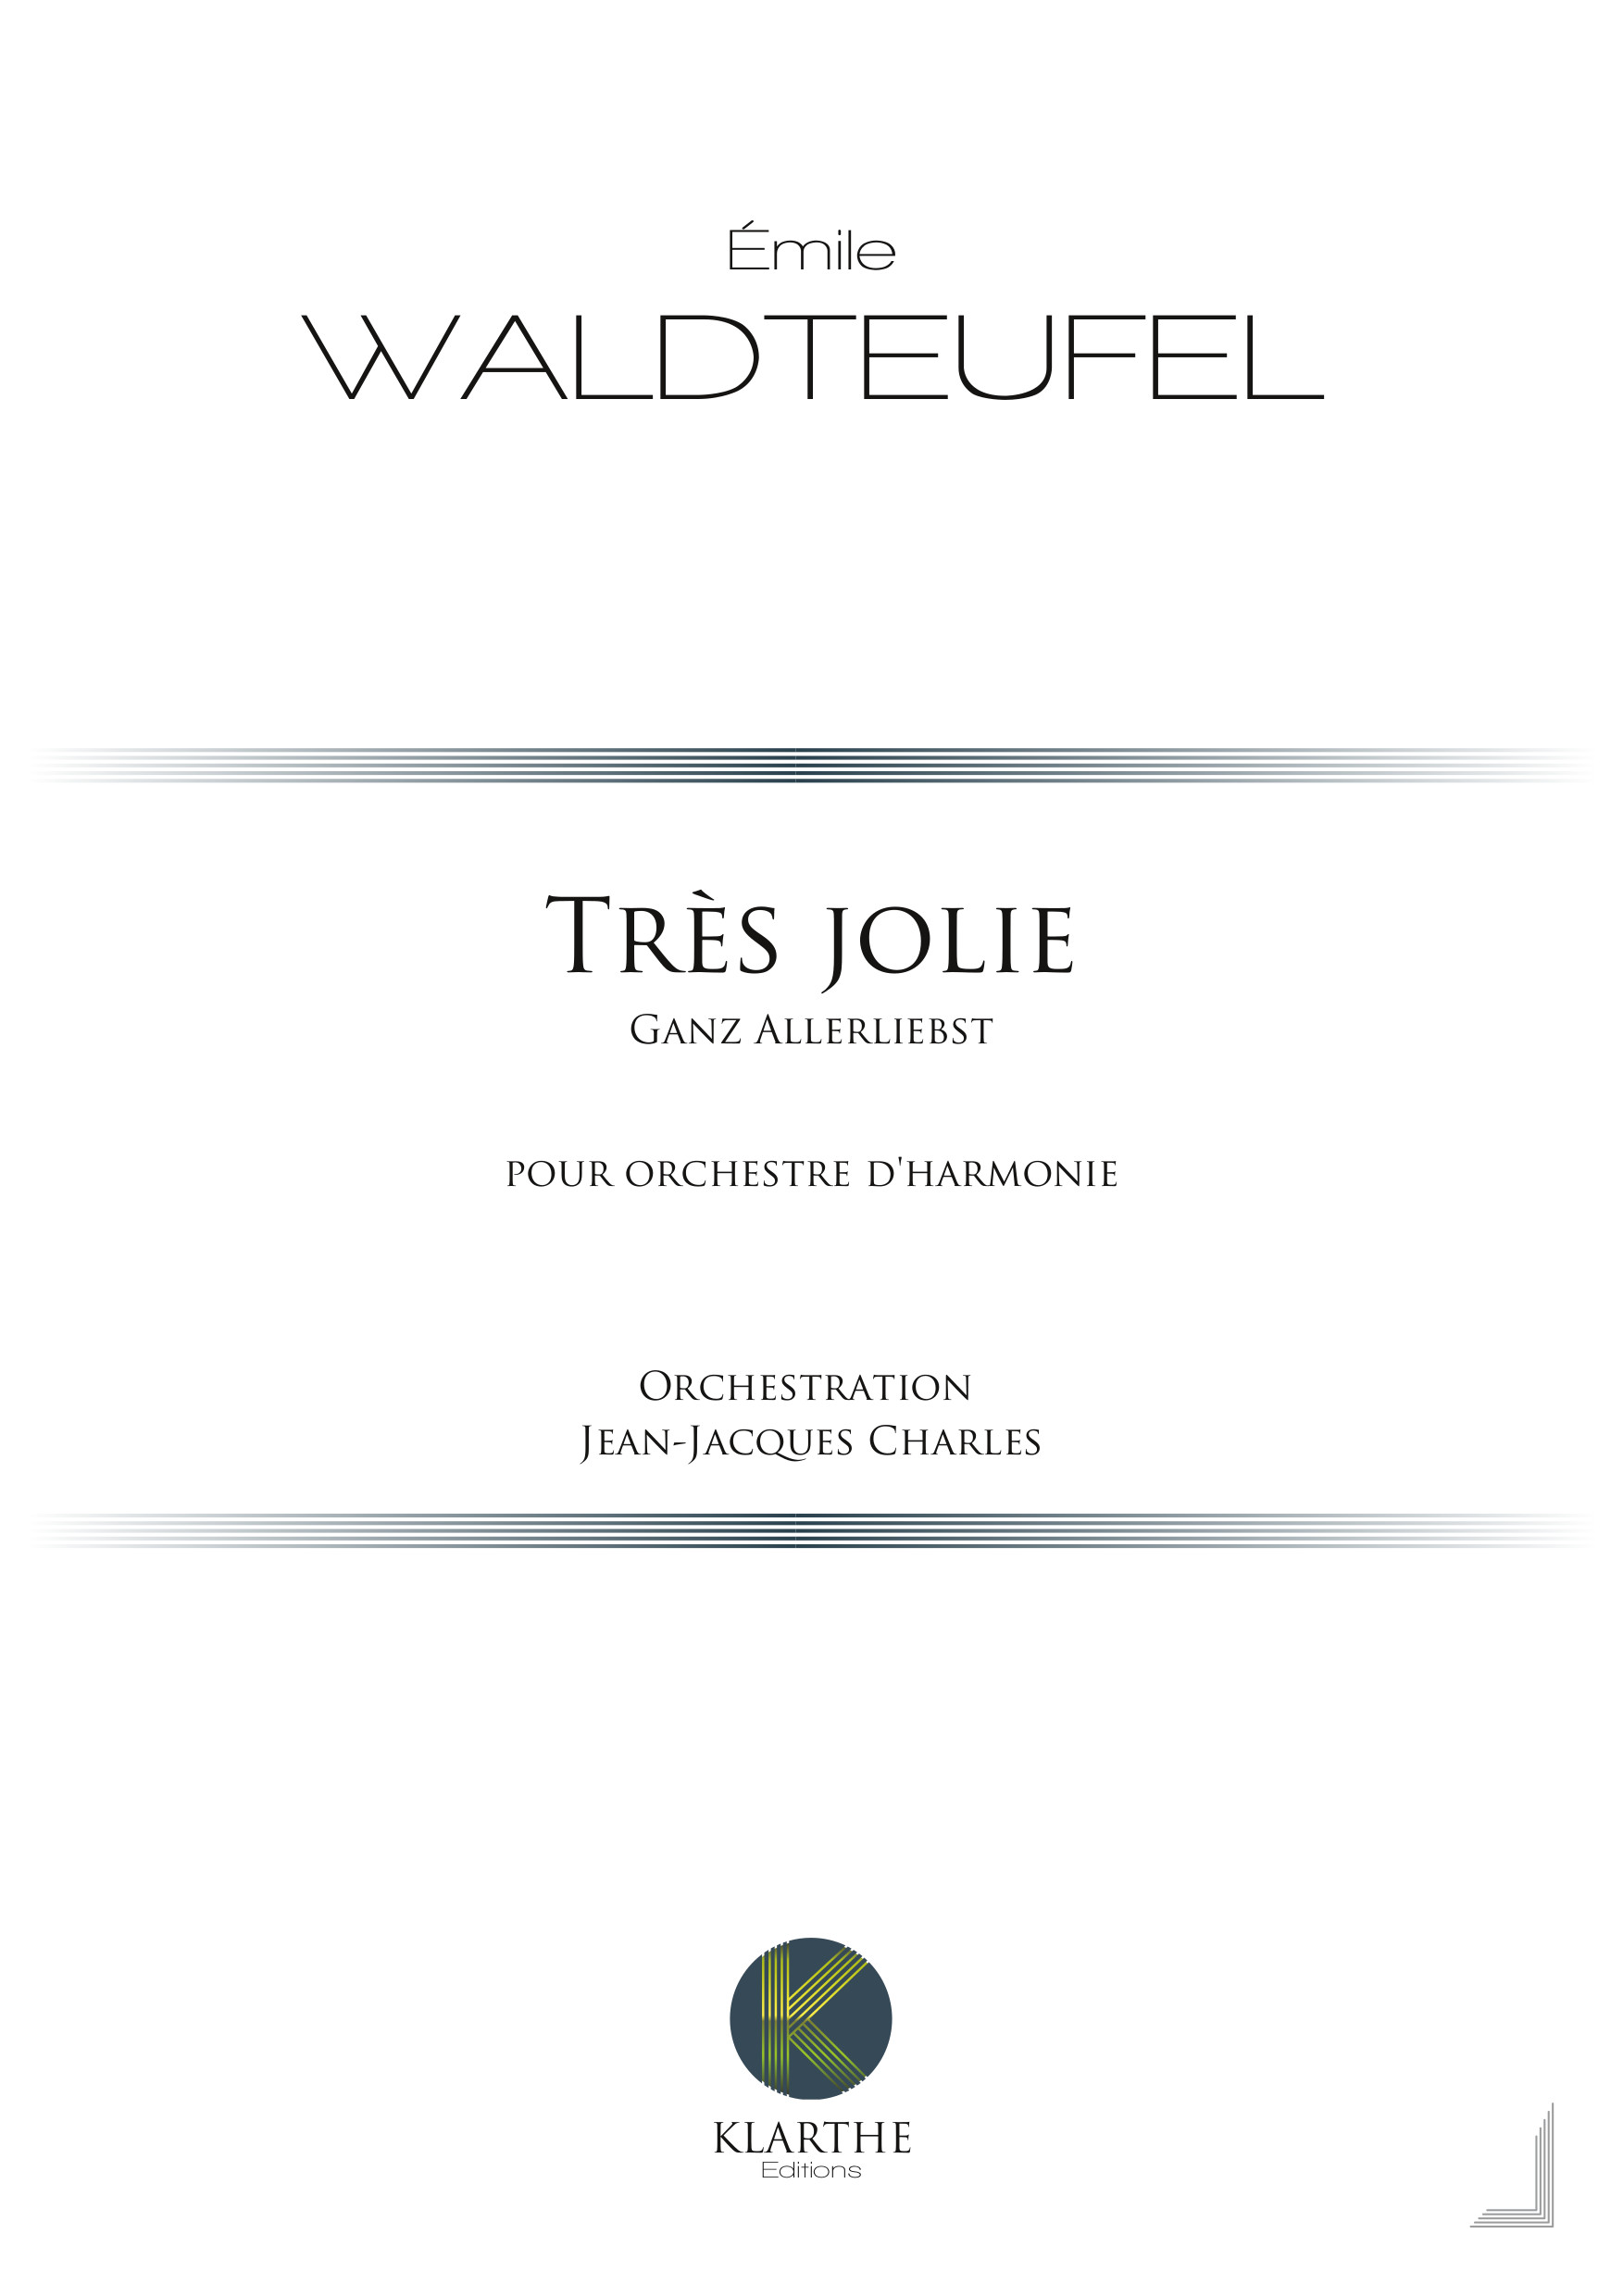 Trs jolie, opus 159 (WALDTEUFEL EMILE)